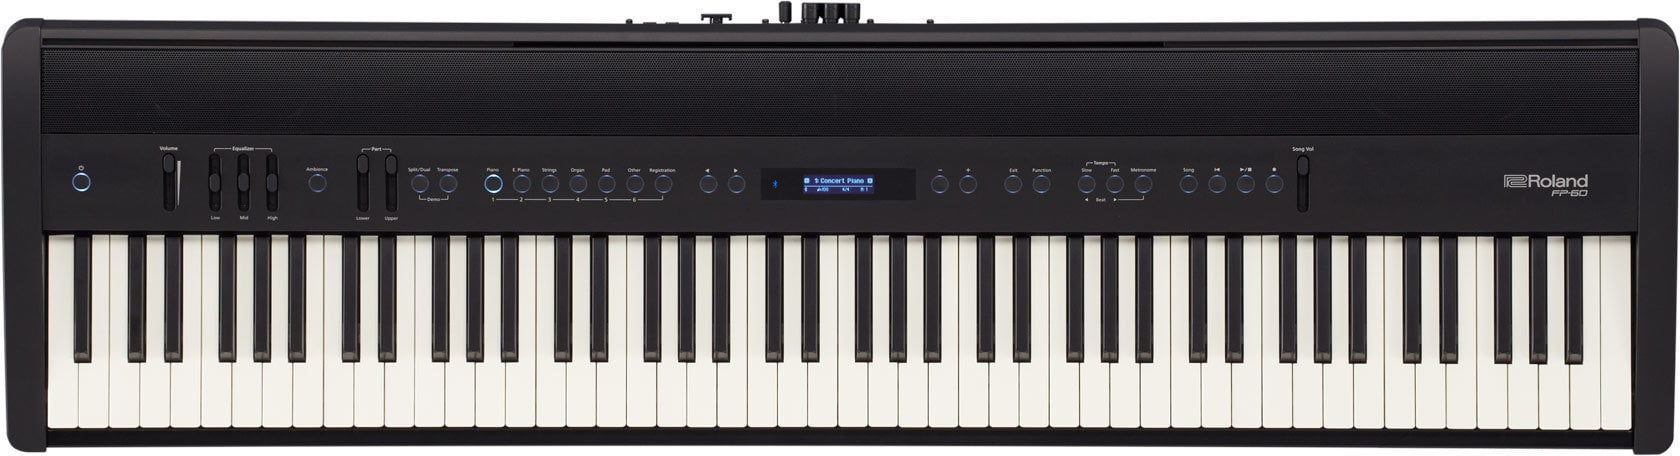 Piano digital de palco Roland FP-60 BK Piano digital de palco